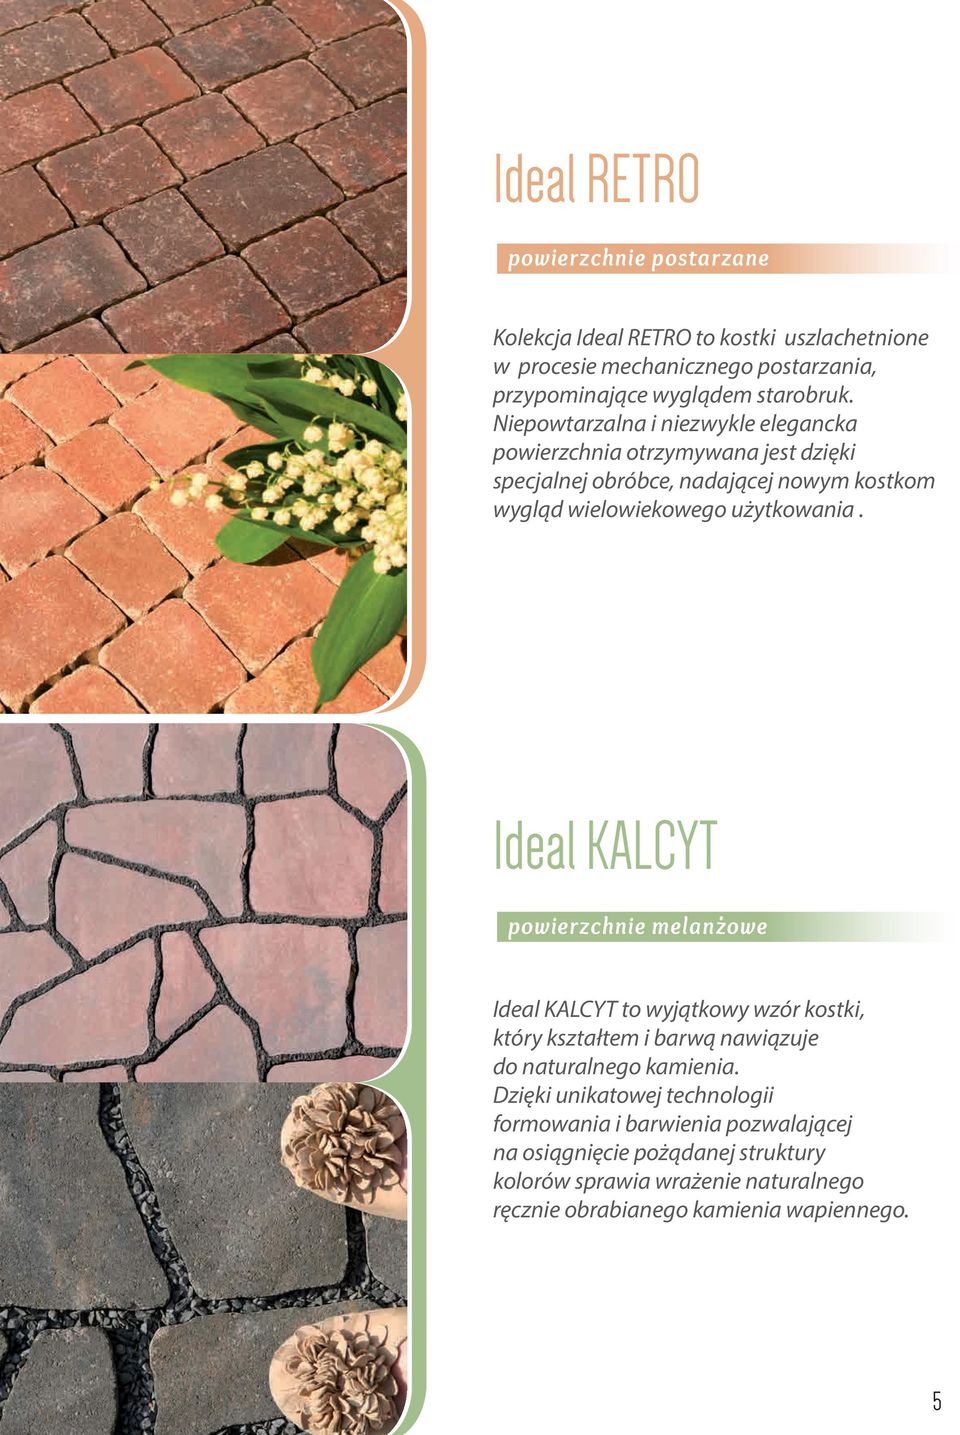 Ideal KALCYT powierzchnie melanzowe Ideal KALCYT to wyjątkowy wzór kostki, który kształtem i barwą nawiązuje do naturalnego kamienia.